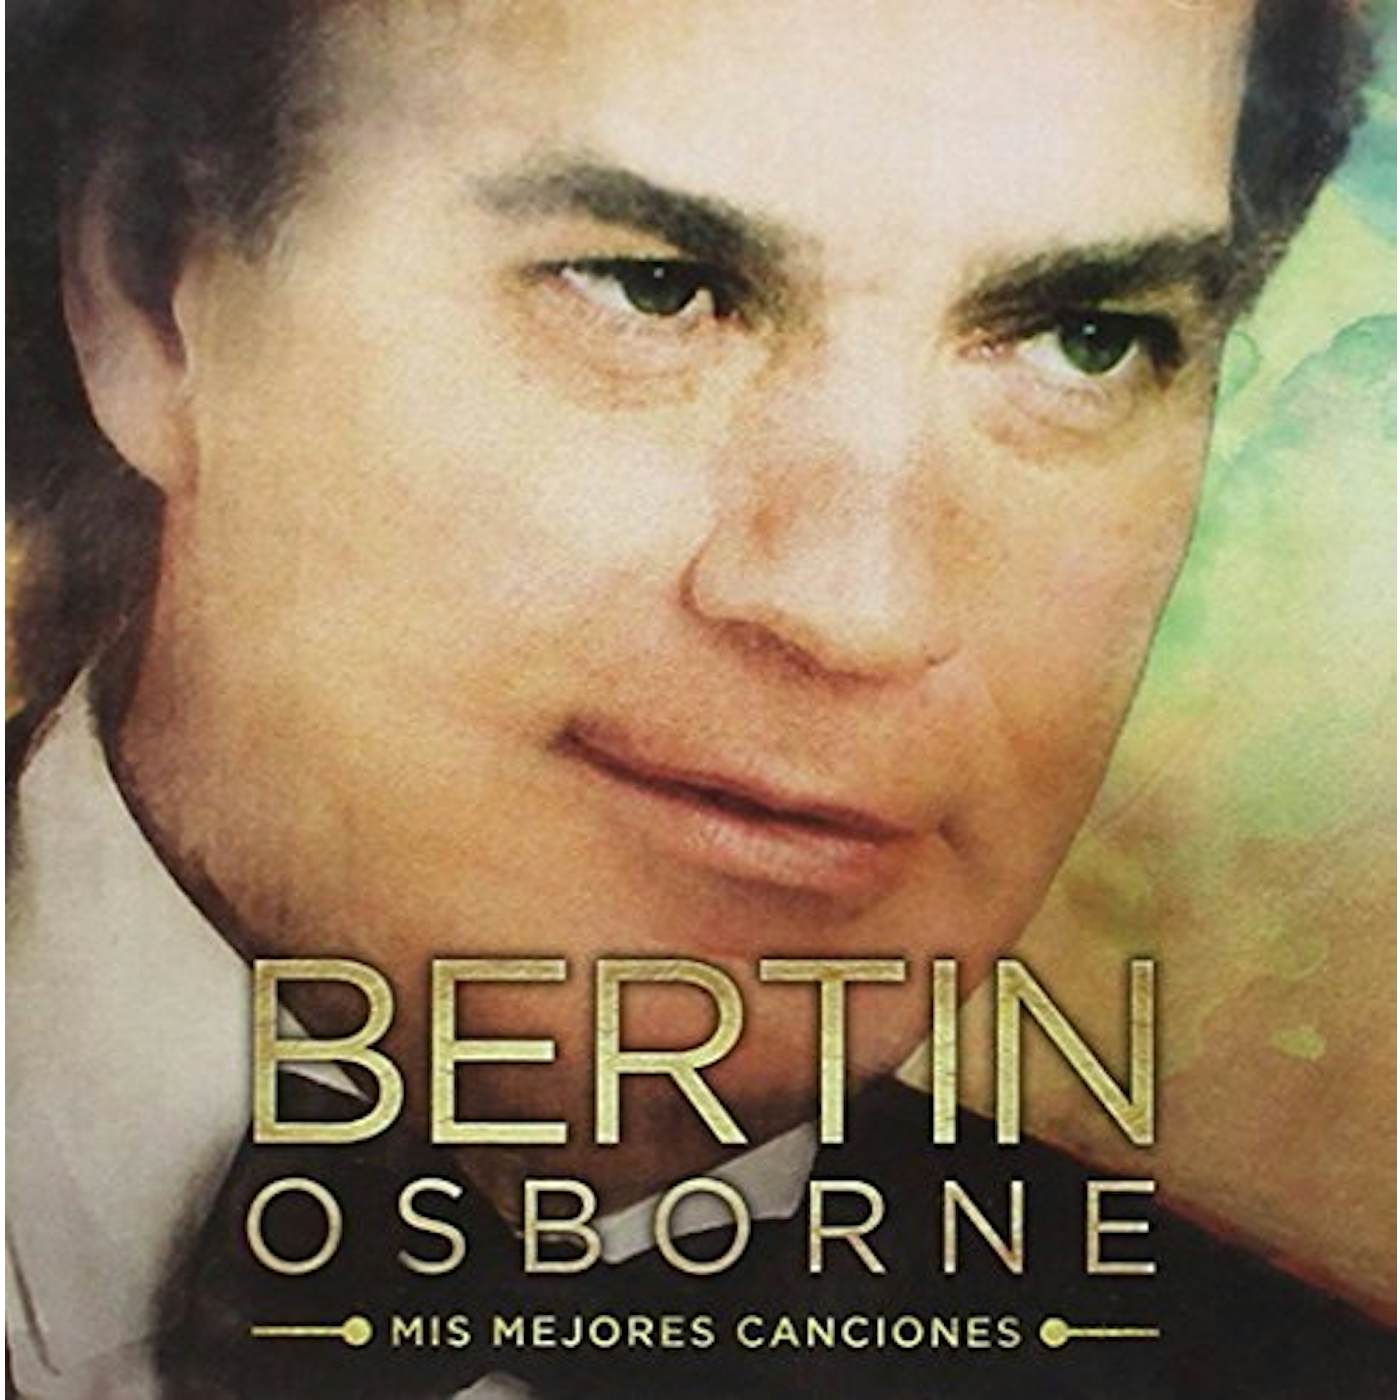 Bertin Osborne MIS MEJORES CANCIONES CD